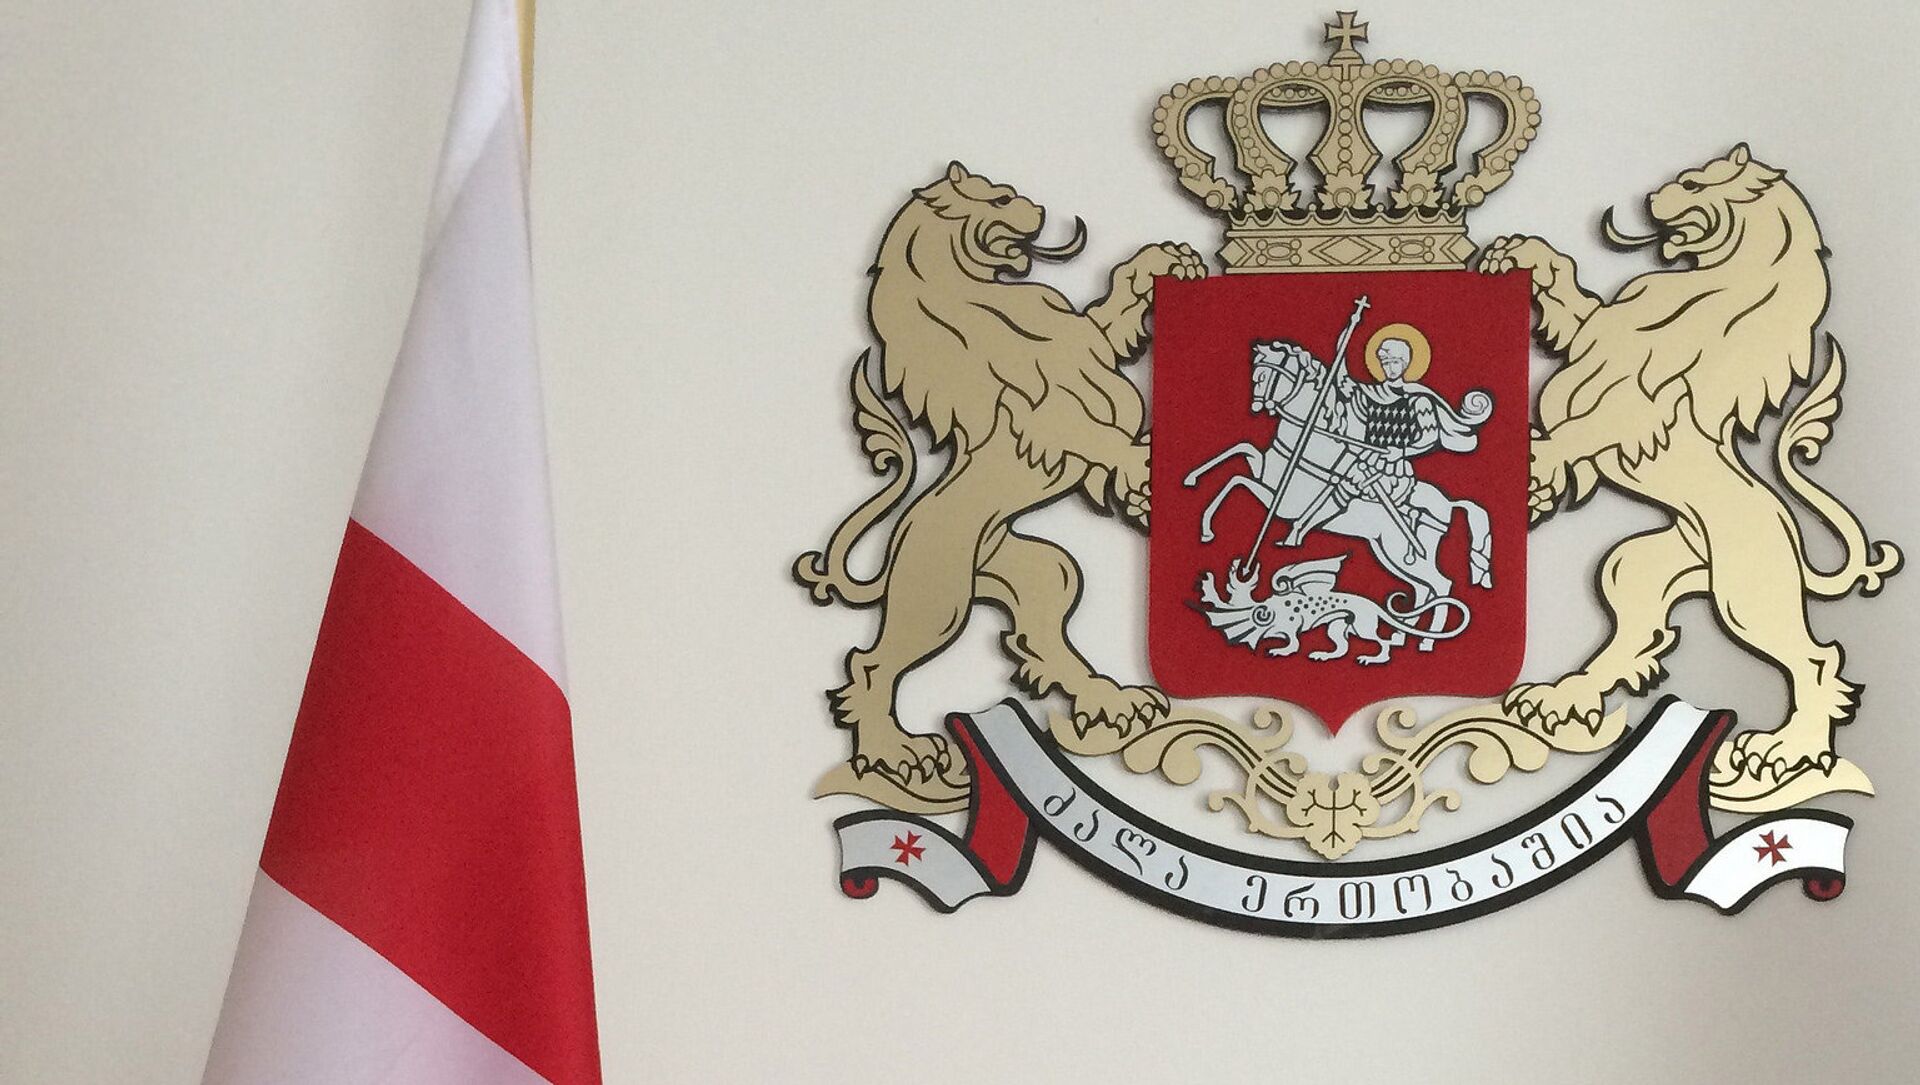 Грузия флаг и герб